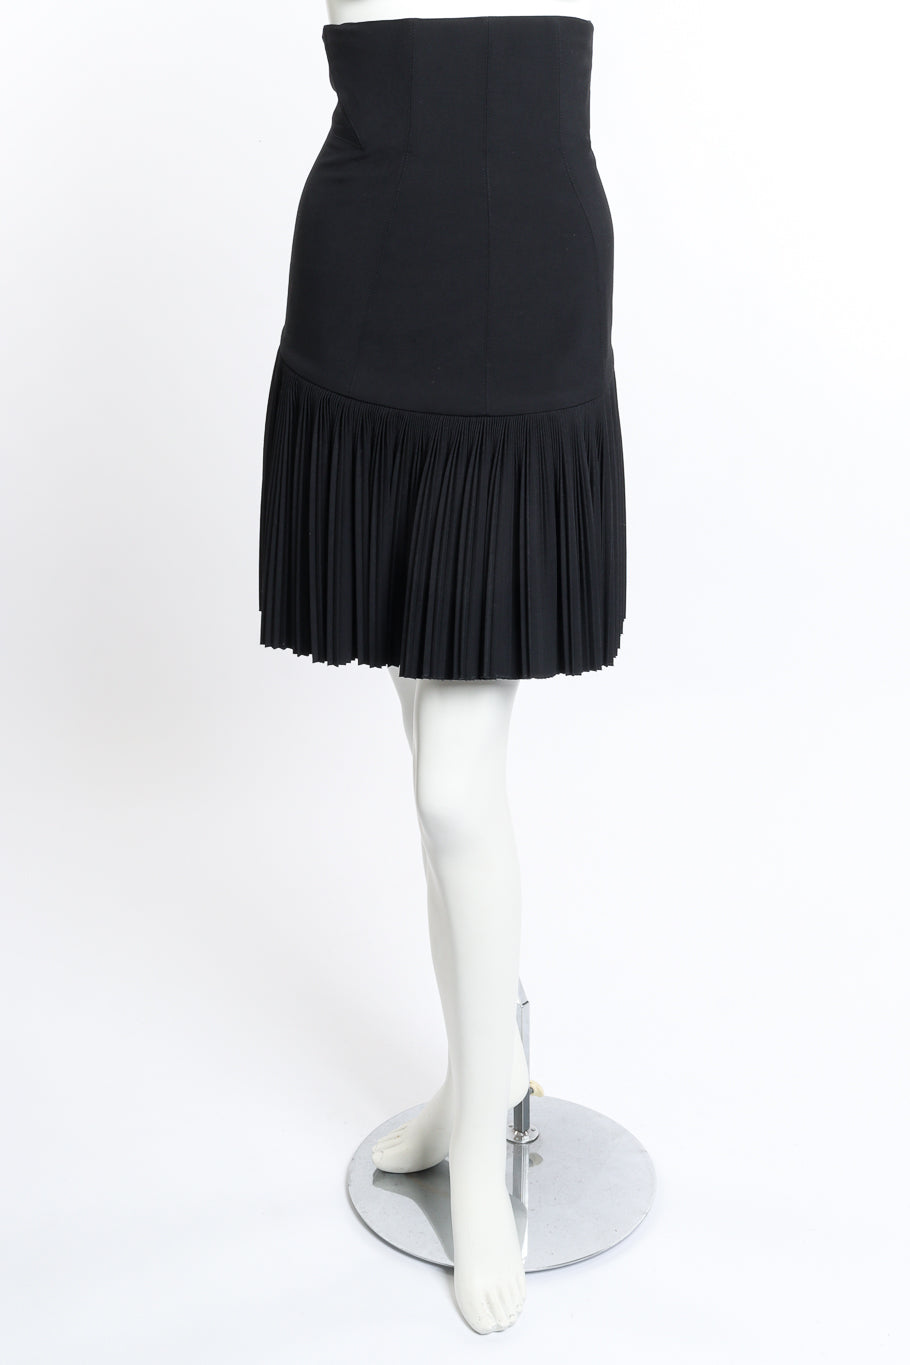 Vintage Alaïa Pleated Corset Skirt front on mannequin @recess la